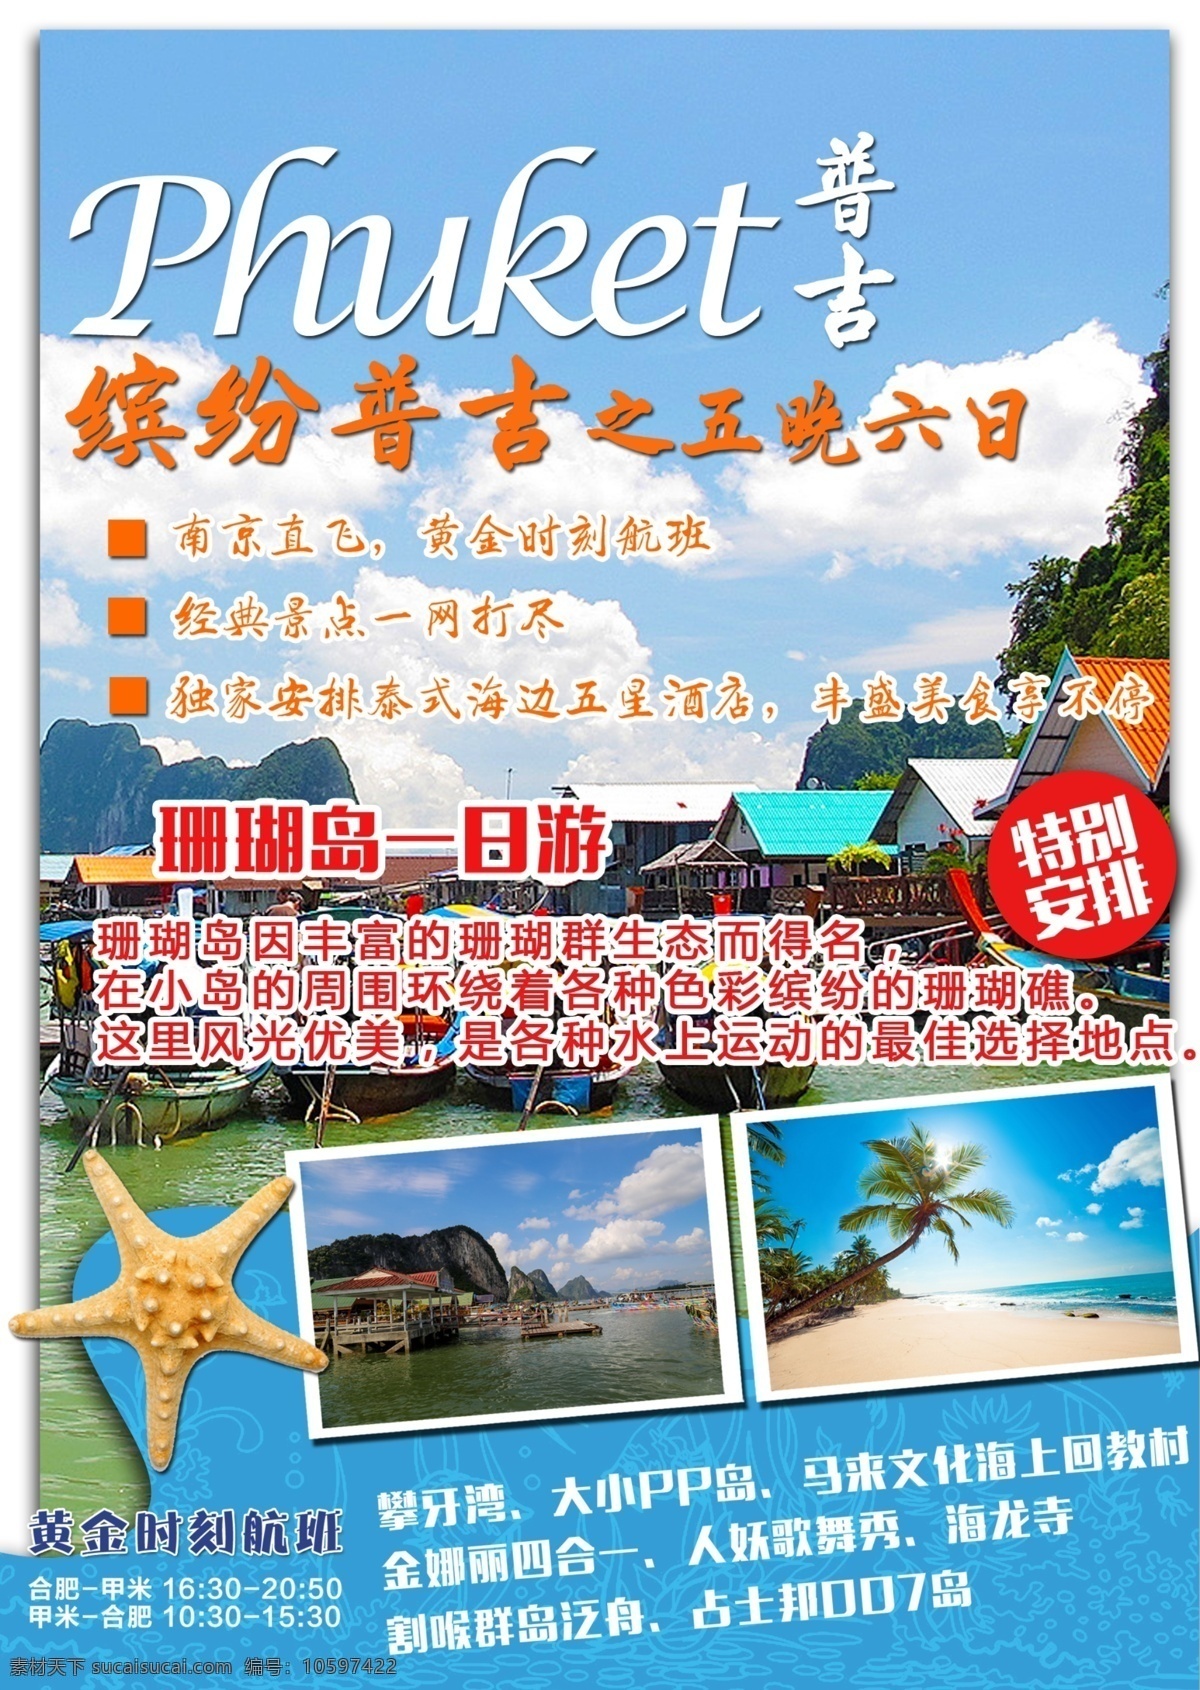 普吉 五 晚 六日 游 泰国 海岛 旅游 封面 海报 珊瑚岛 白色